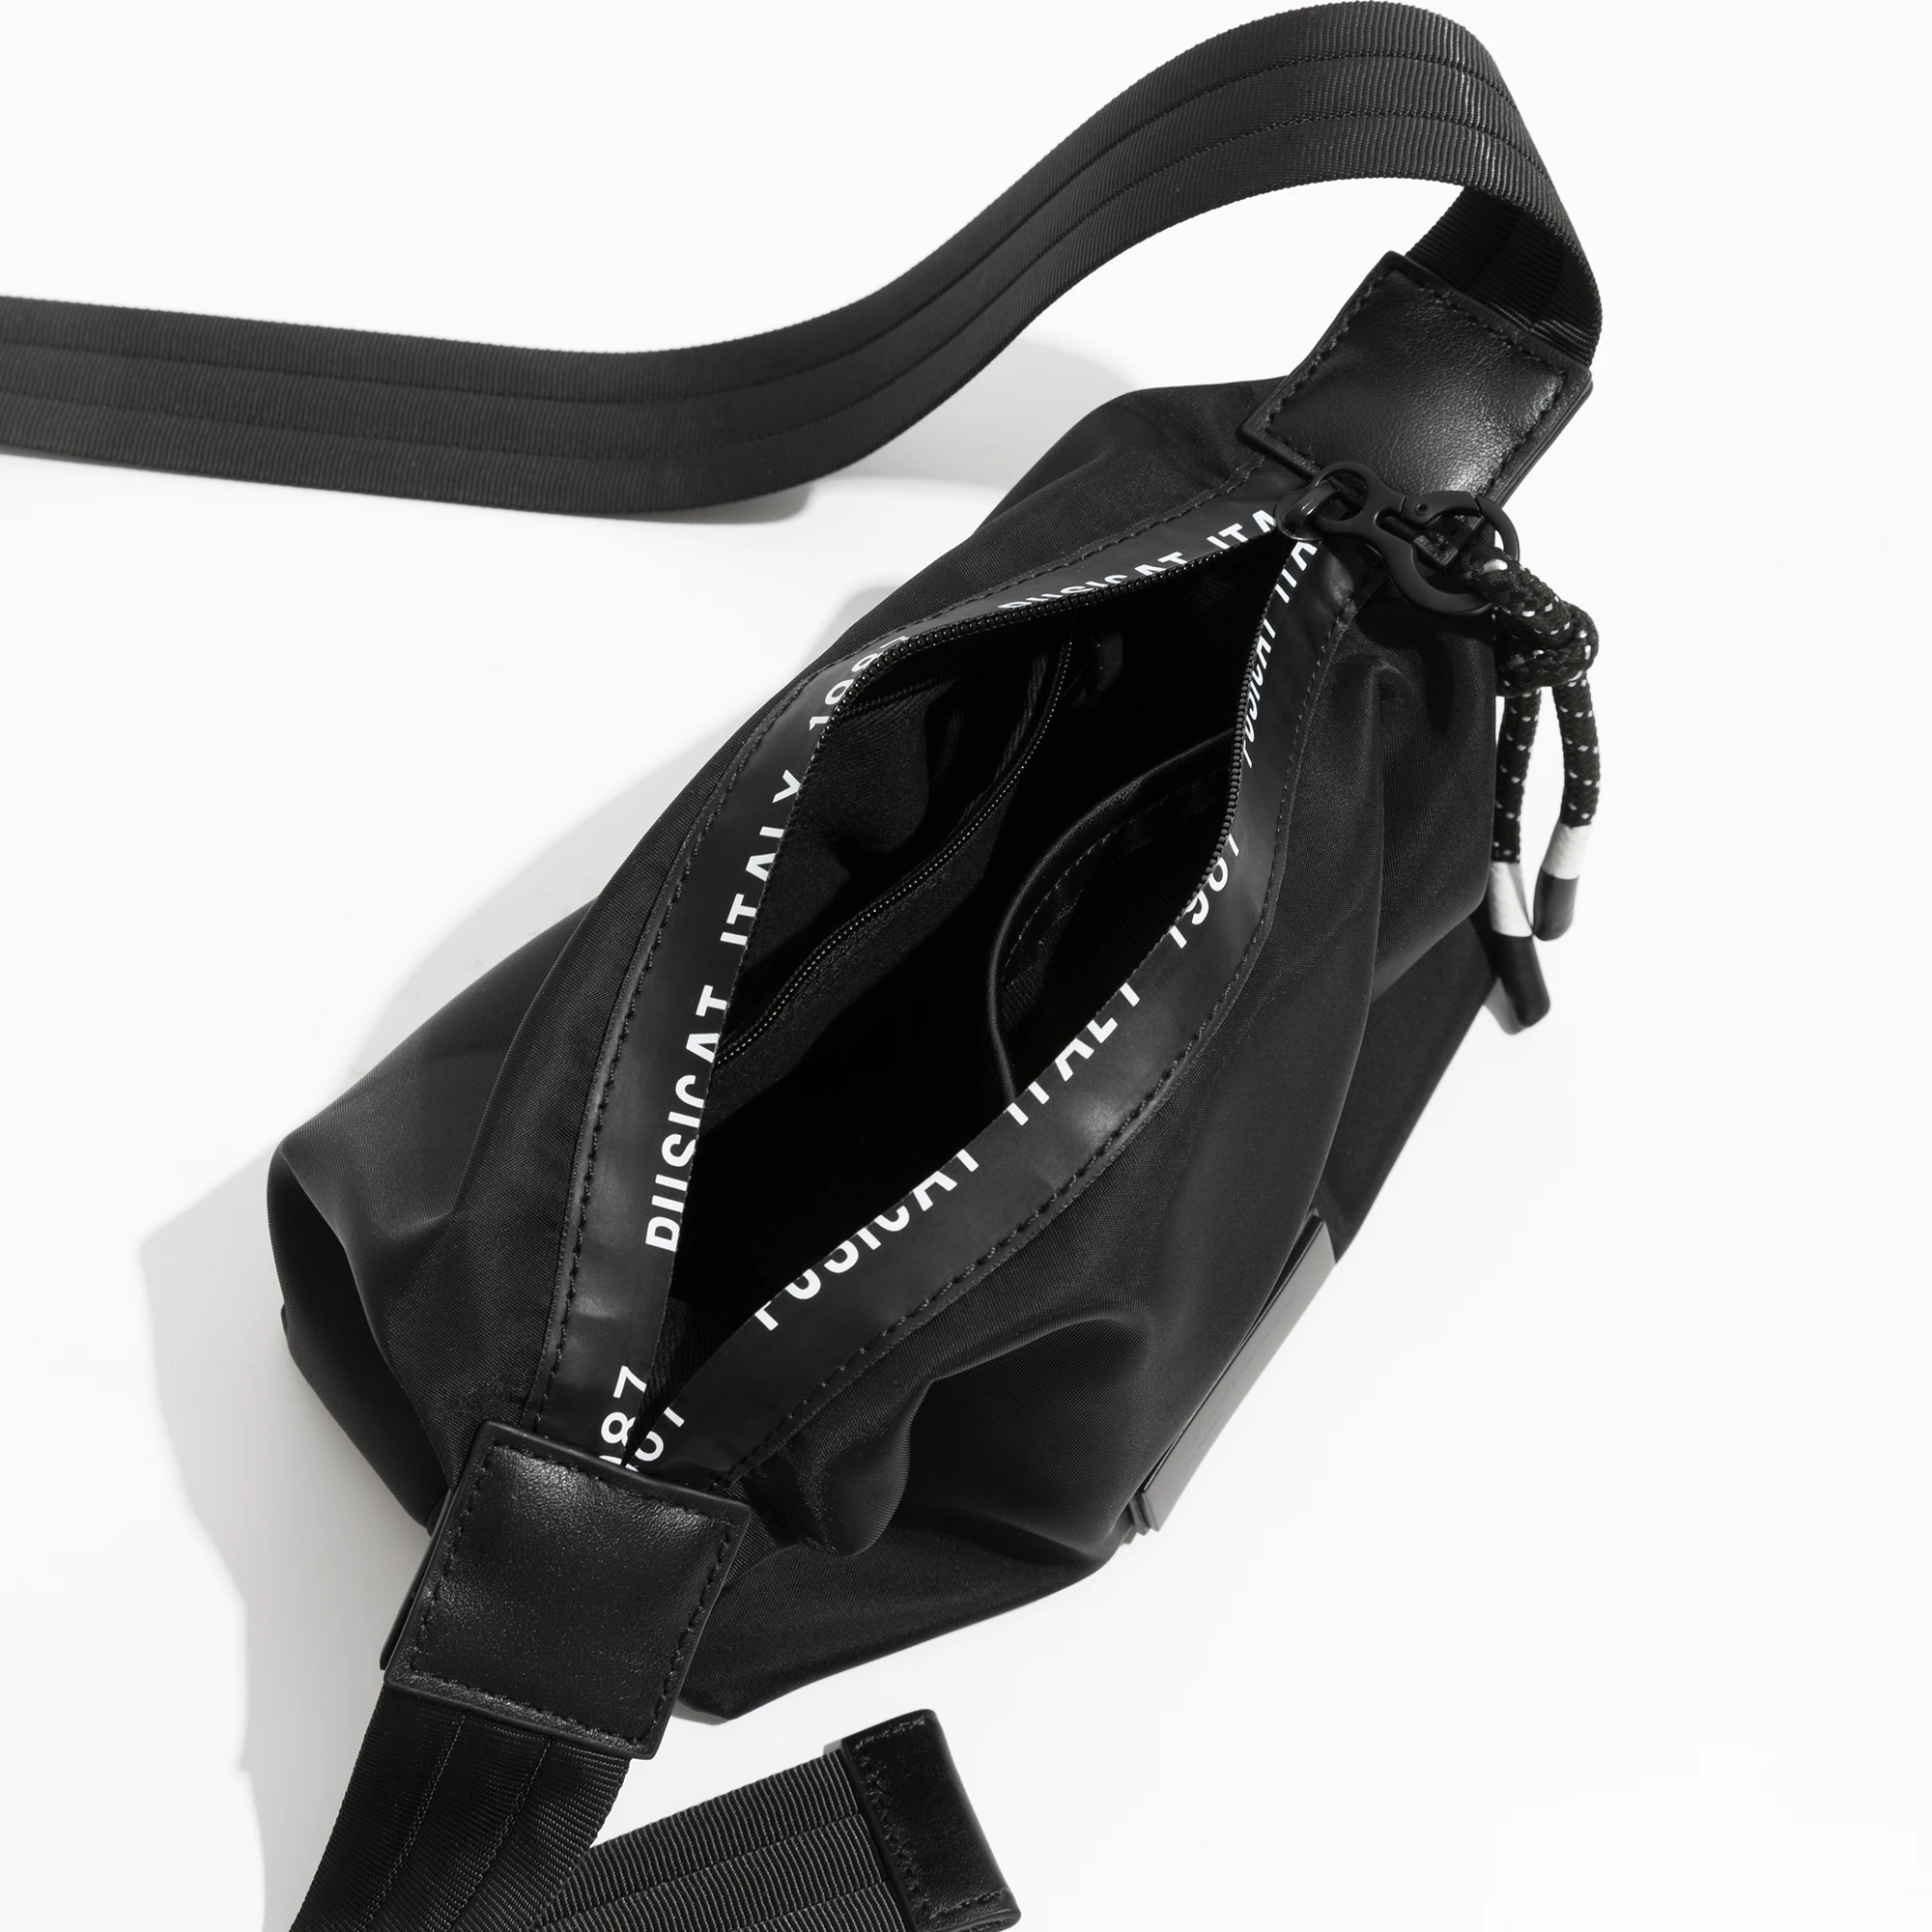 MABULA, луксозен марка, дамска чанта през рамо от естествена кожа, черна проста женска чанта-месинджър чанта за вашия мобилен телефон, малък размер